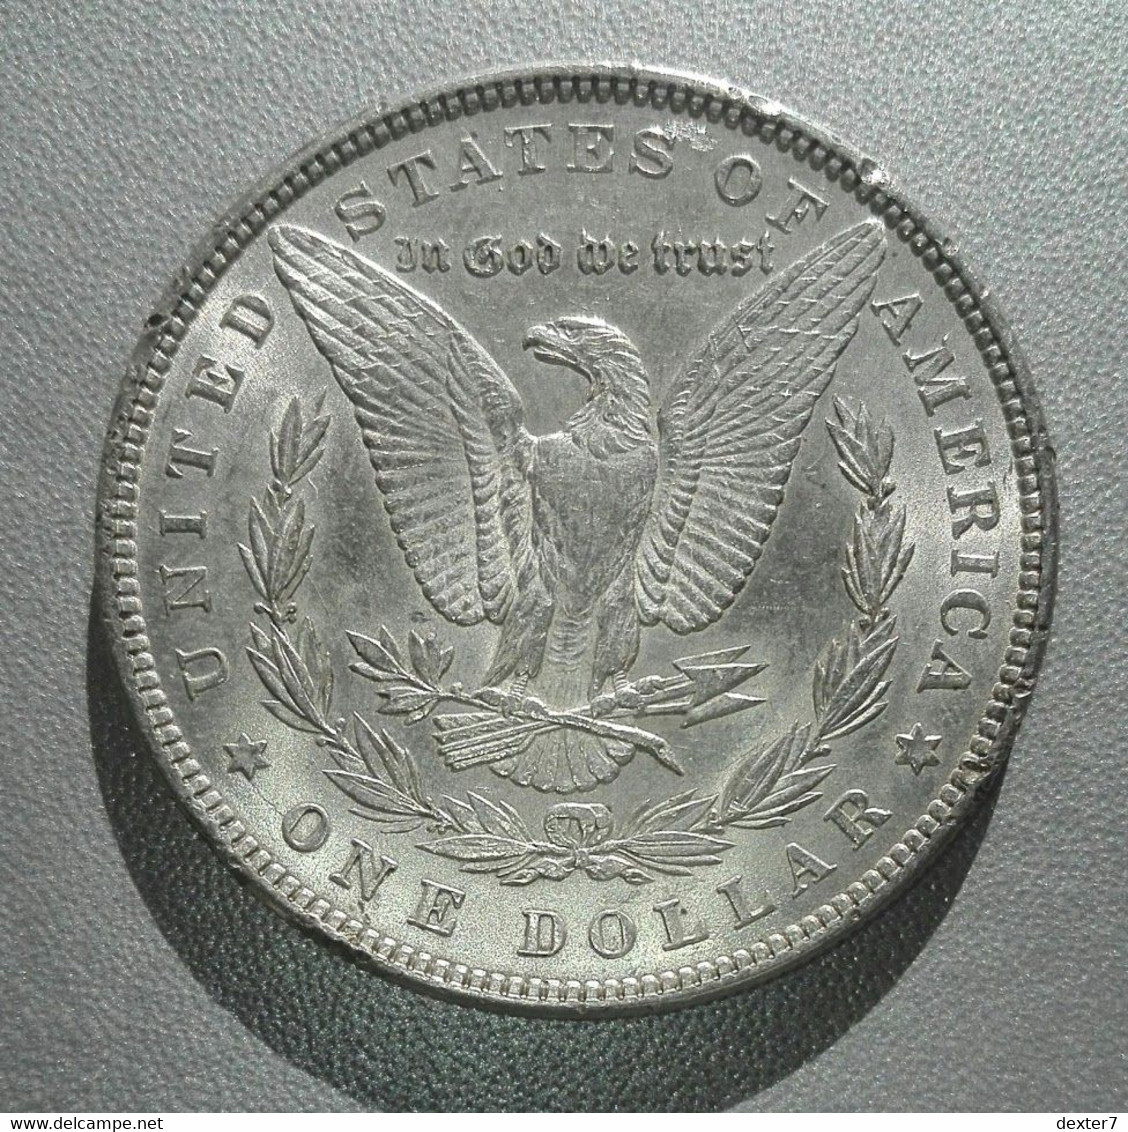 USA Stati Uniti 1 Dollaro 1885 Argento - United States Dollar Morgan - 1878-1921: Morgan